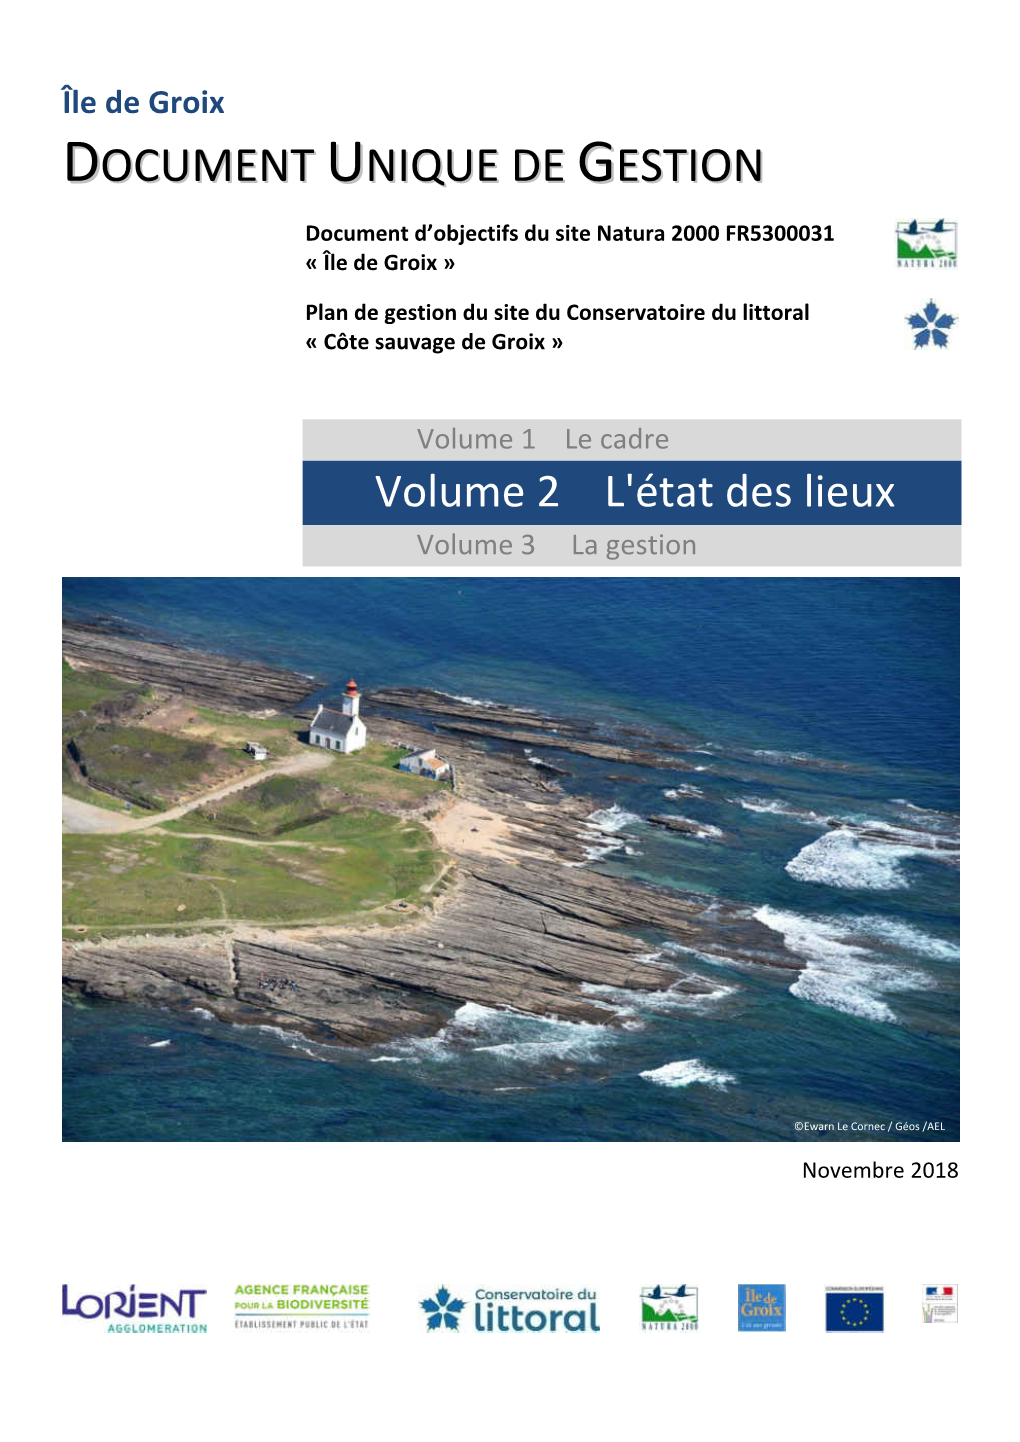 Île De Groix DDOOCCUUMMEENNTT UUNNIIQQUUEE DDEE GGEESSTTIIOONN